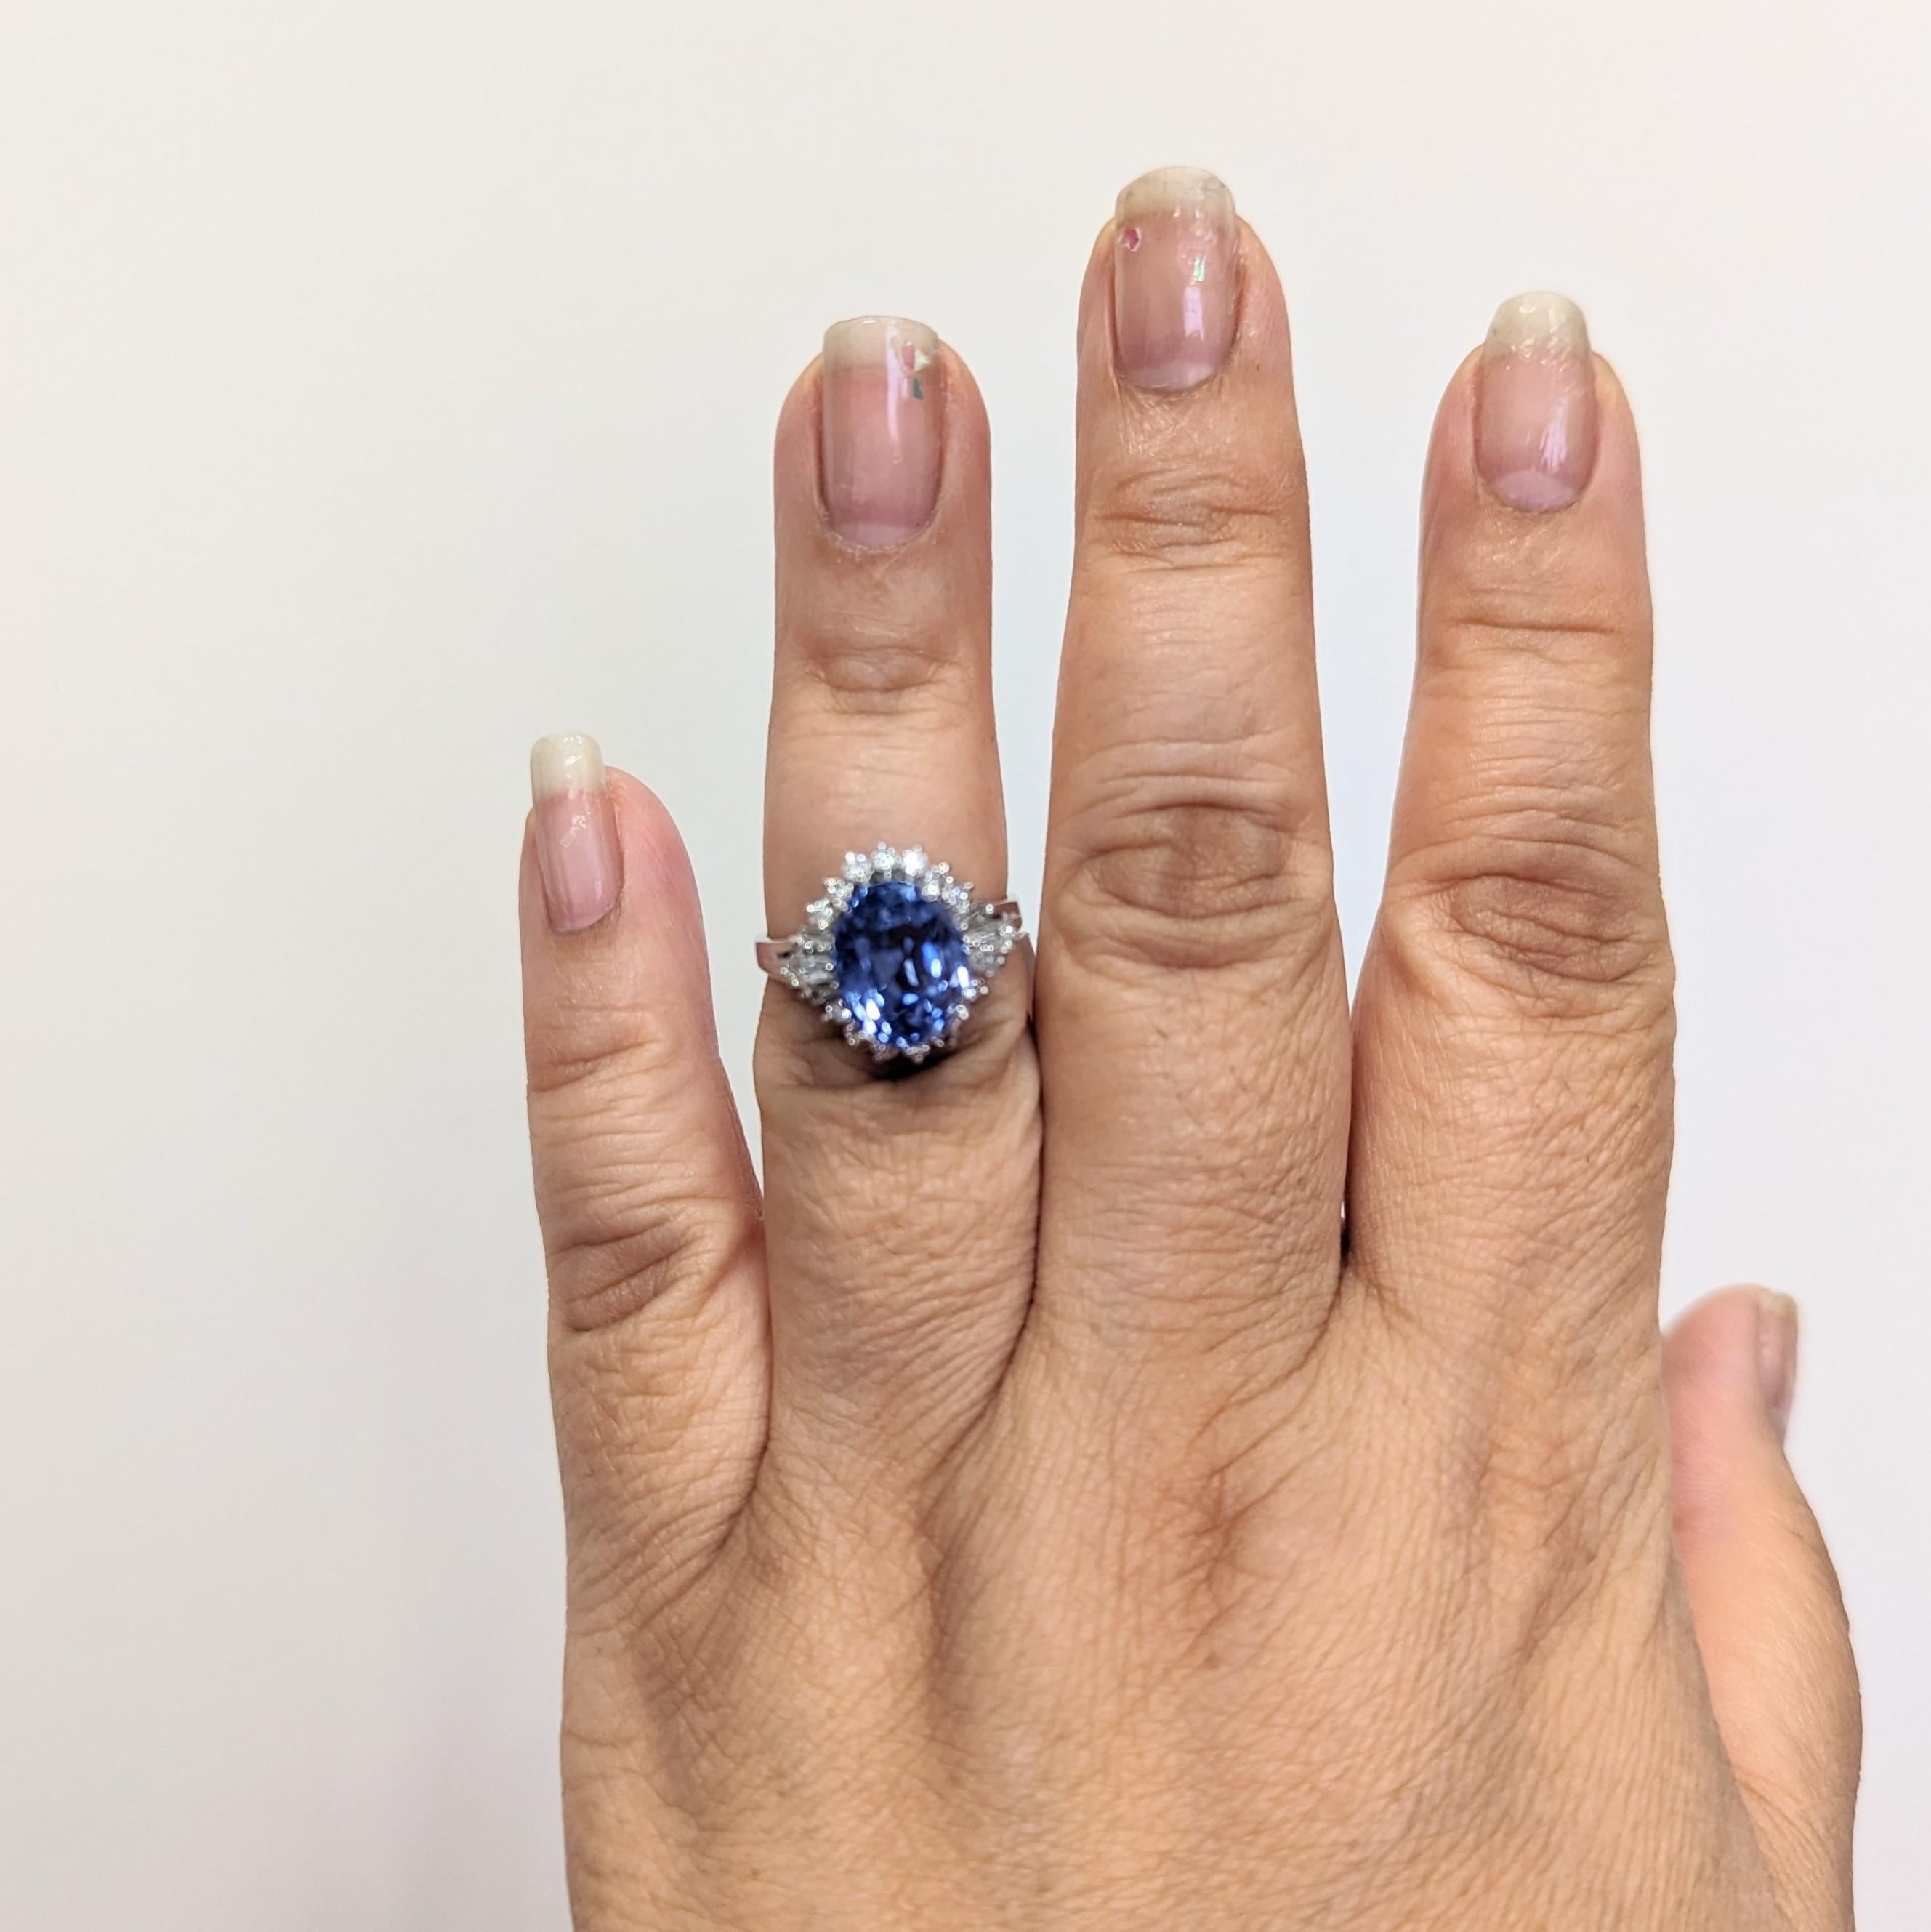 Magnifique saphir bleu du Sri Lanka non chauffé de 6,93 ct. ovale avec 0,62 ct. de diamants blancs baguettes et ronds de bonne qualité.  Fait à la main en platine.  Bague taille 7.25.